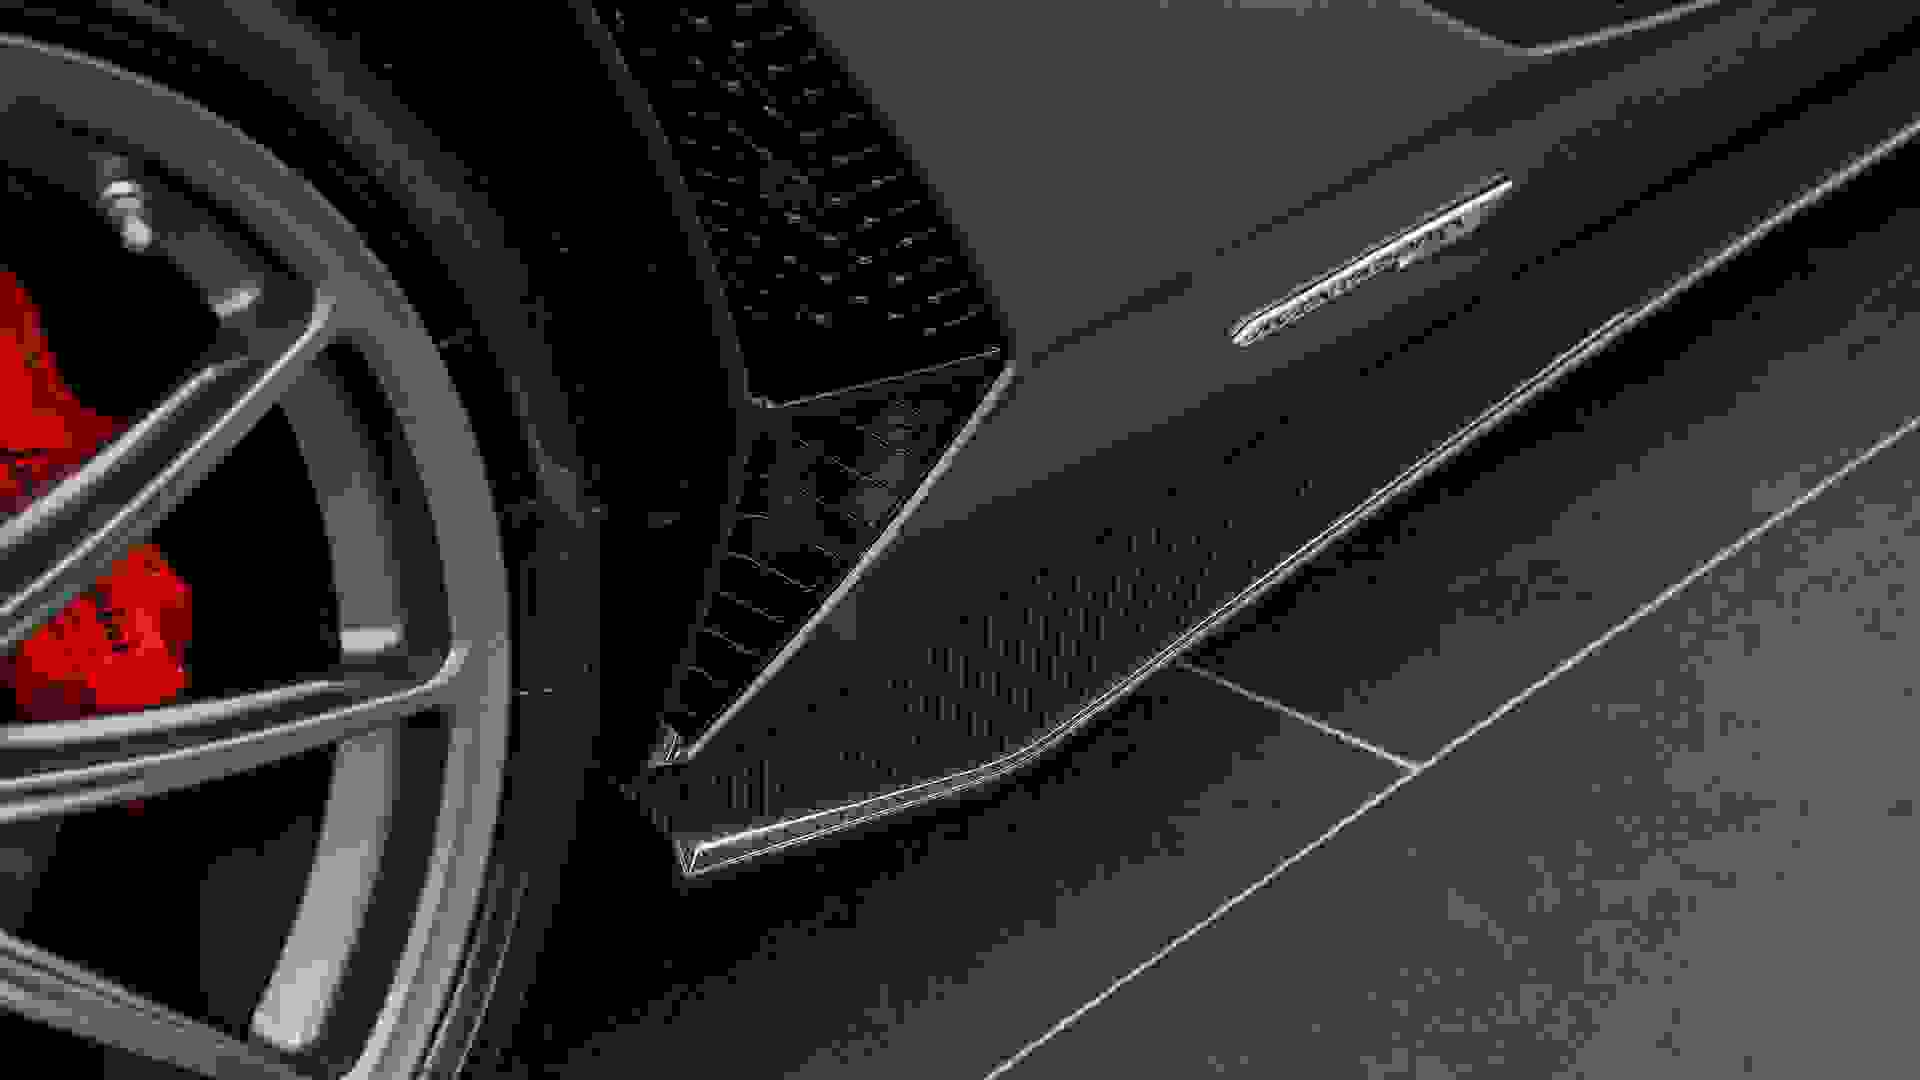 Lamborghini Aventador Photo 00722338-2772-4376-bcd8-2176b75036c7.jpg